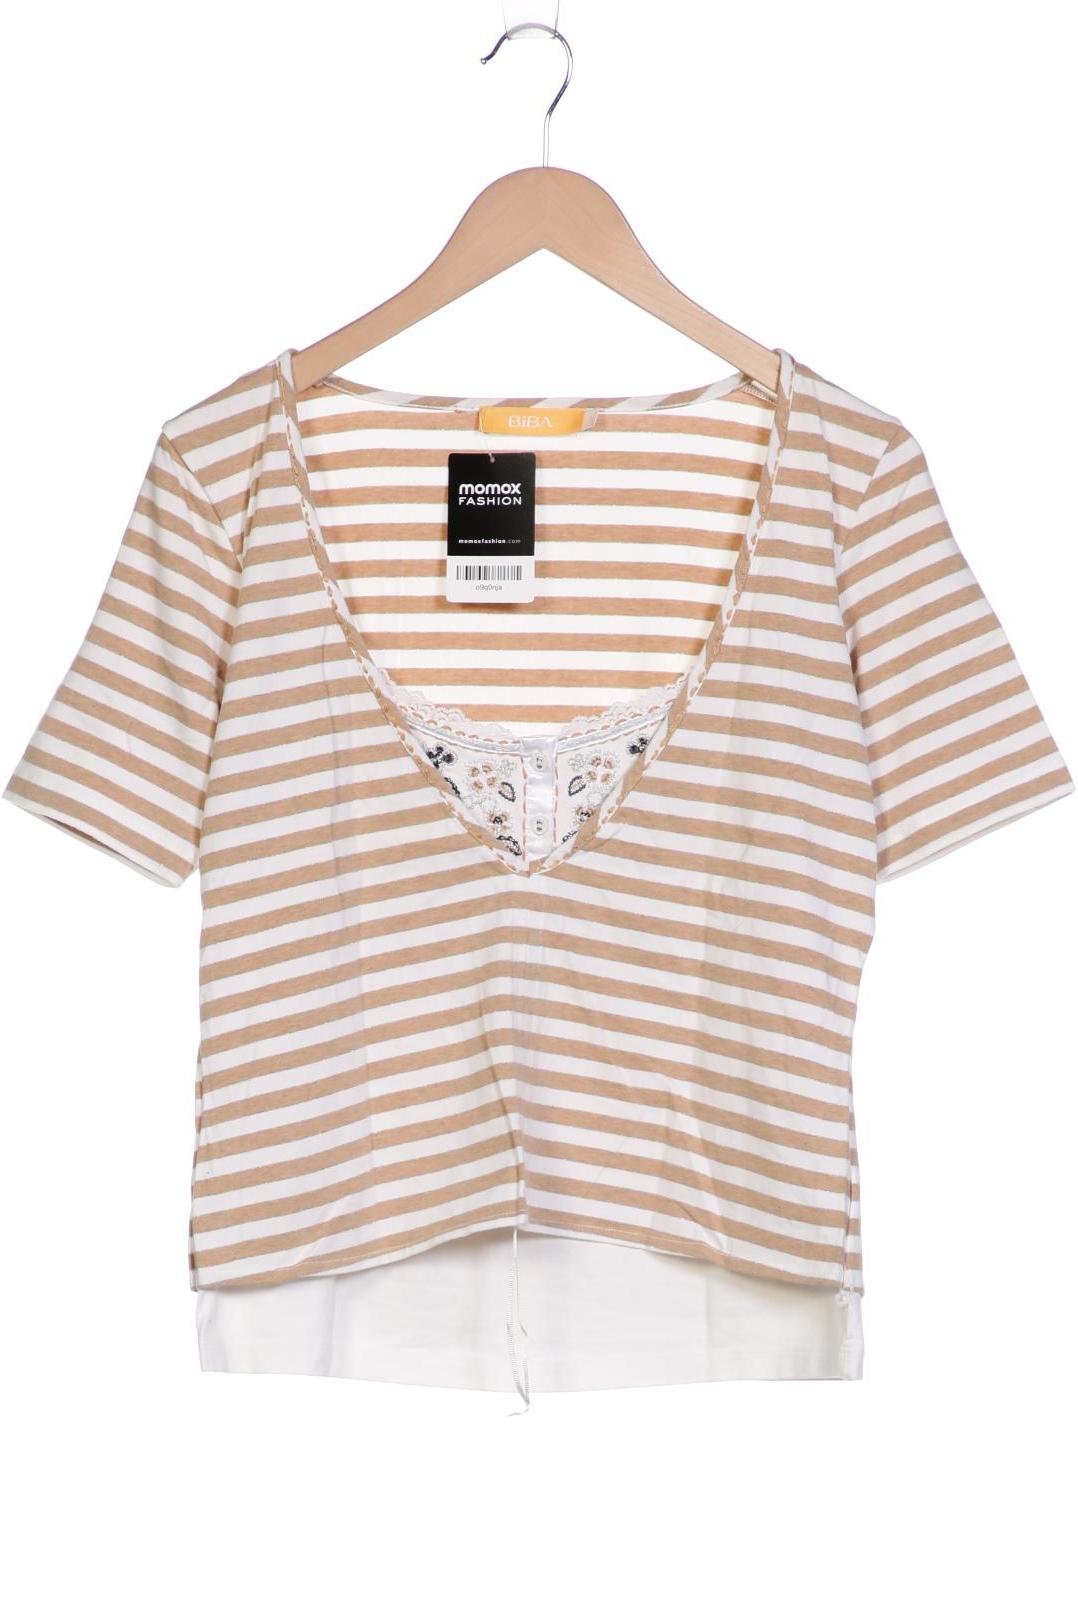 BiBA Damen T-Shirt, braun, Gr. 38 von BiBA